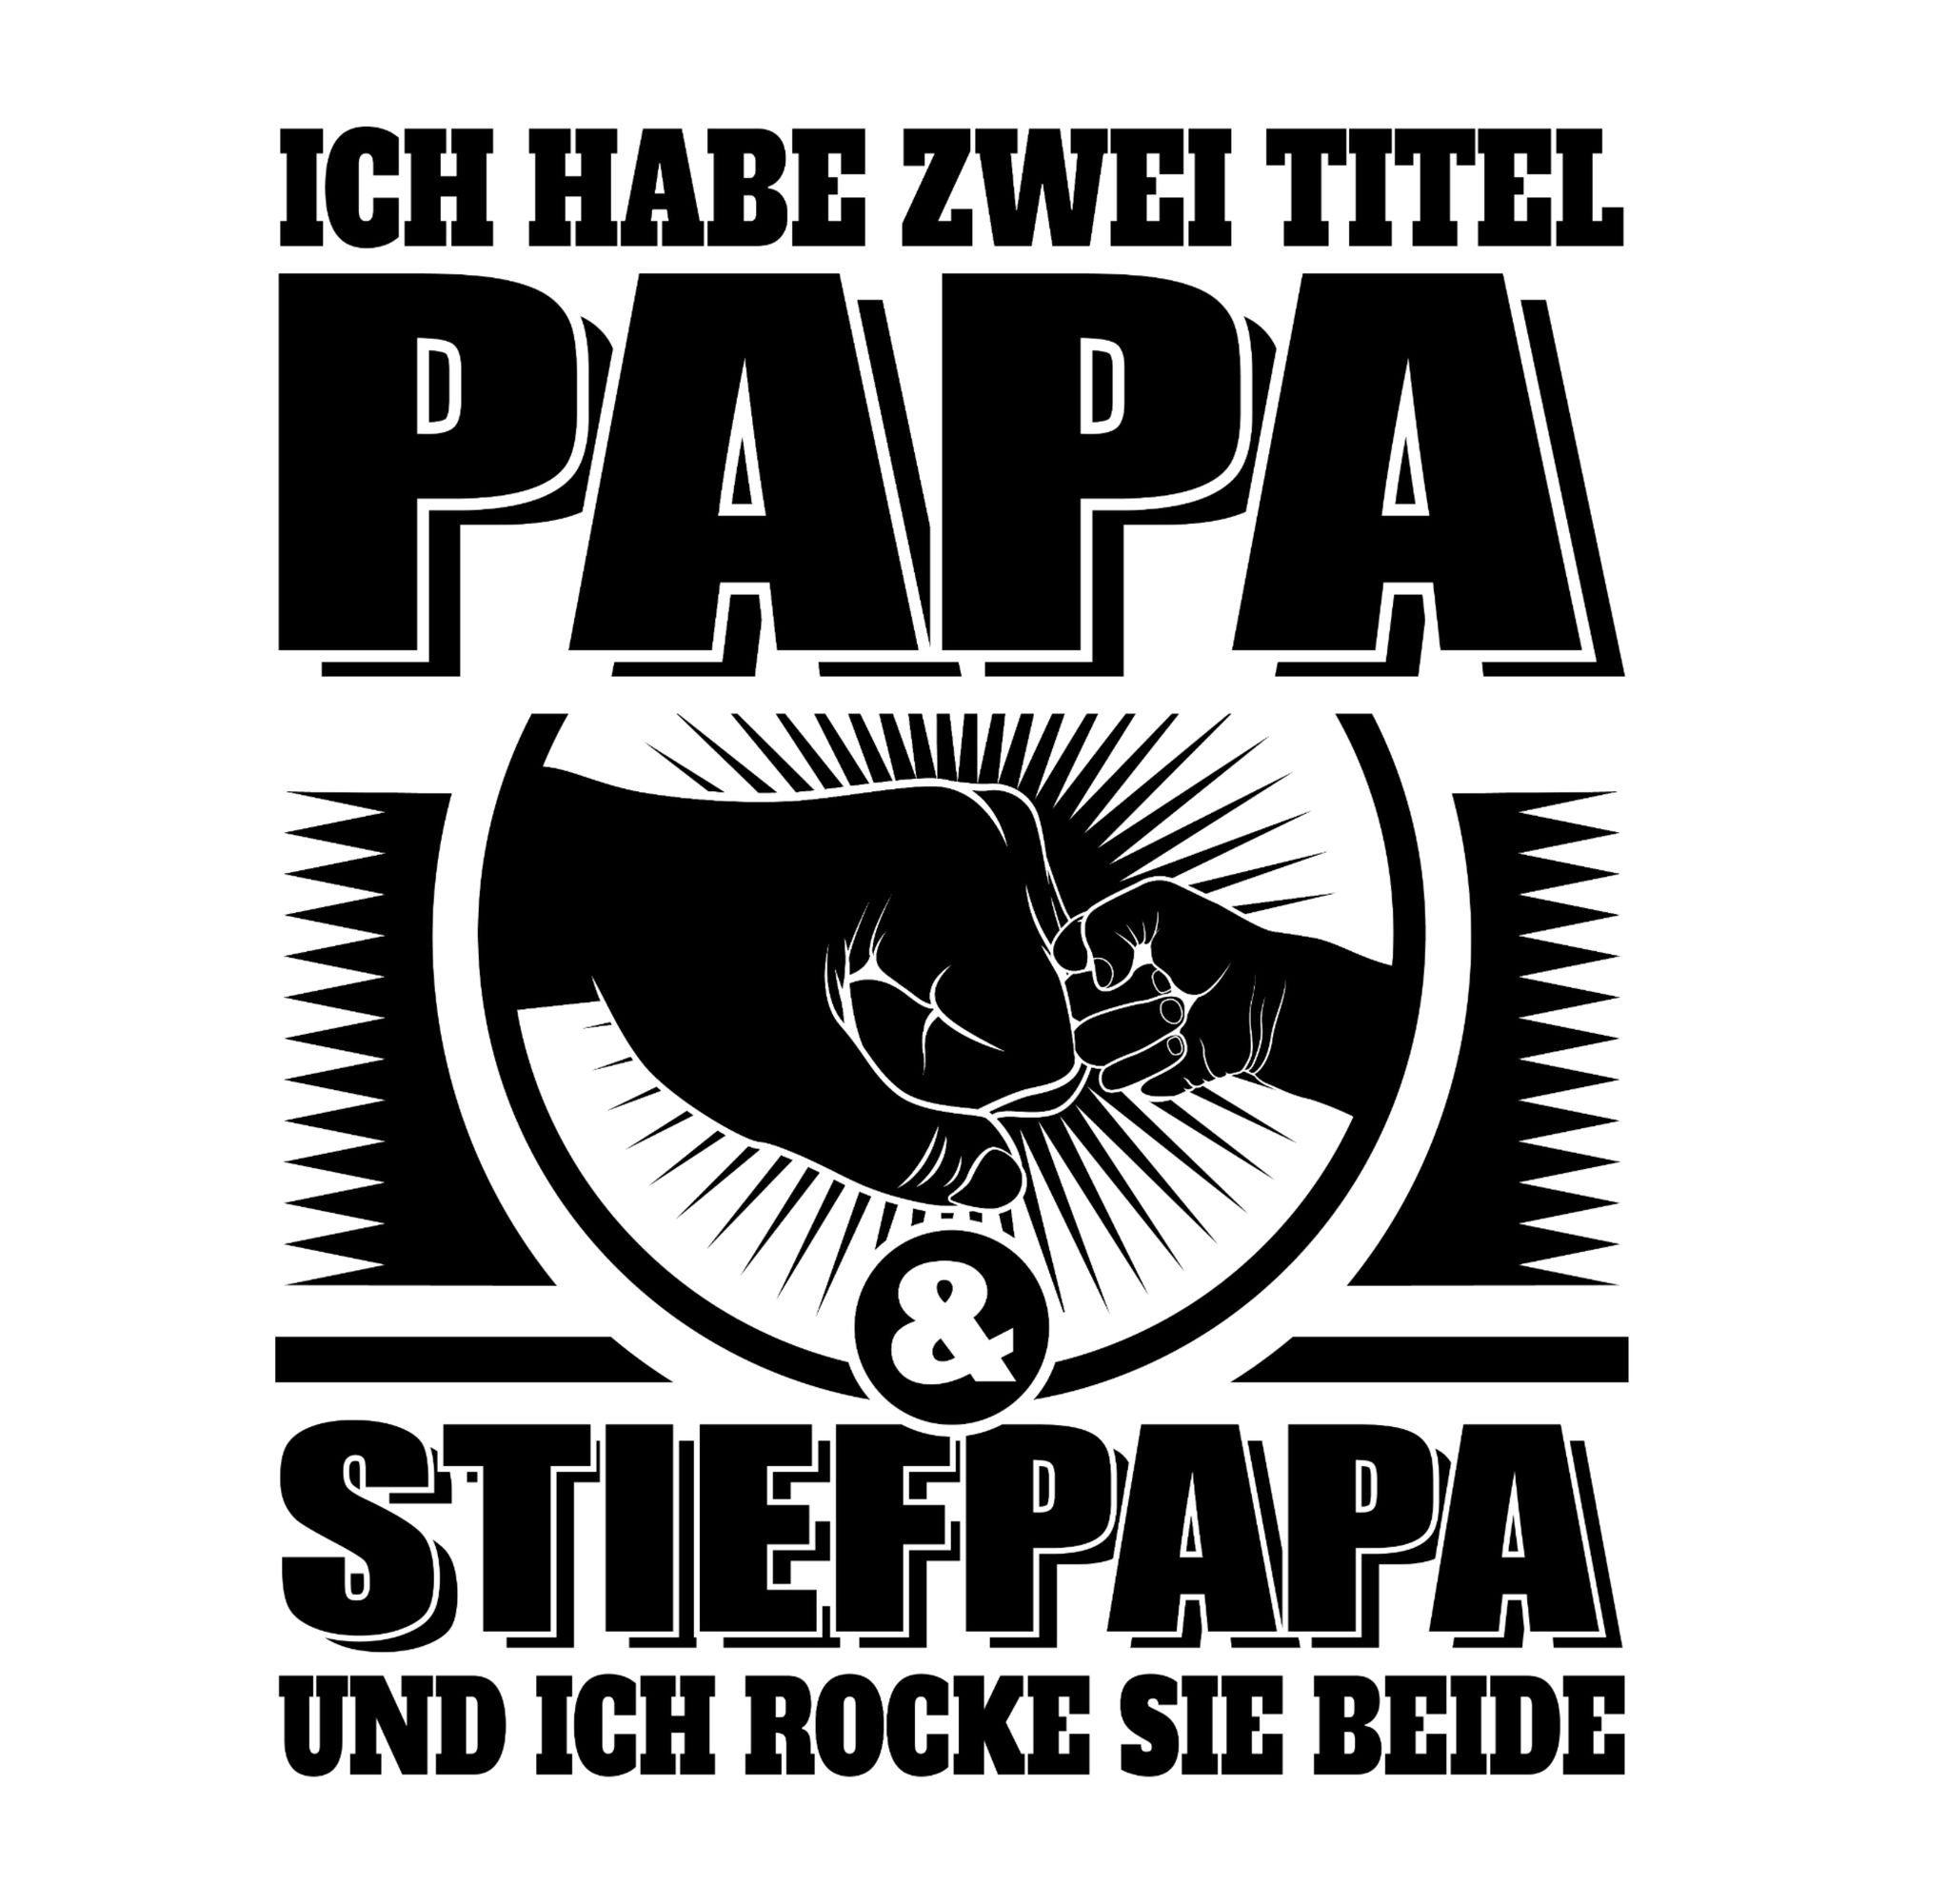 - Vatertag Ich und Shirtracer für und Stiefpapa habe sch Papa beide Titel - sie Papa ich Dunkelgrau T-Shirt zwei 01 Geschenk rocke